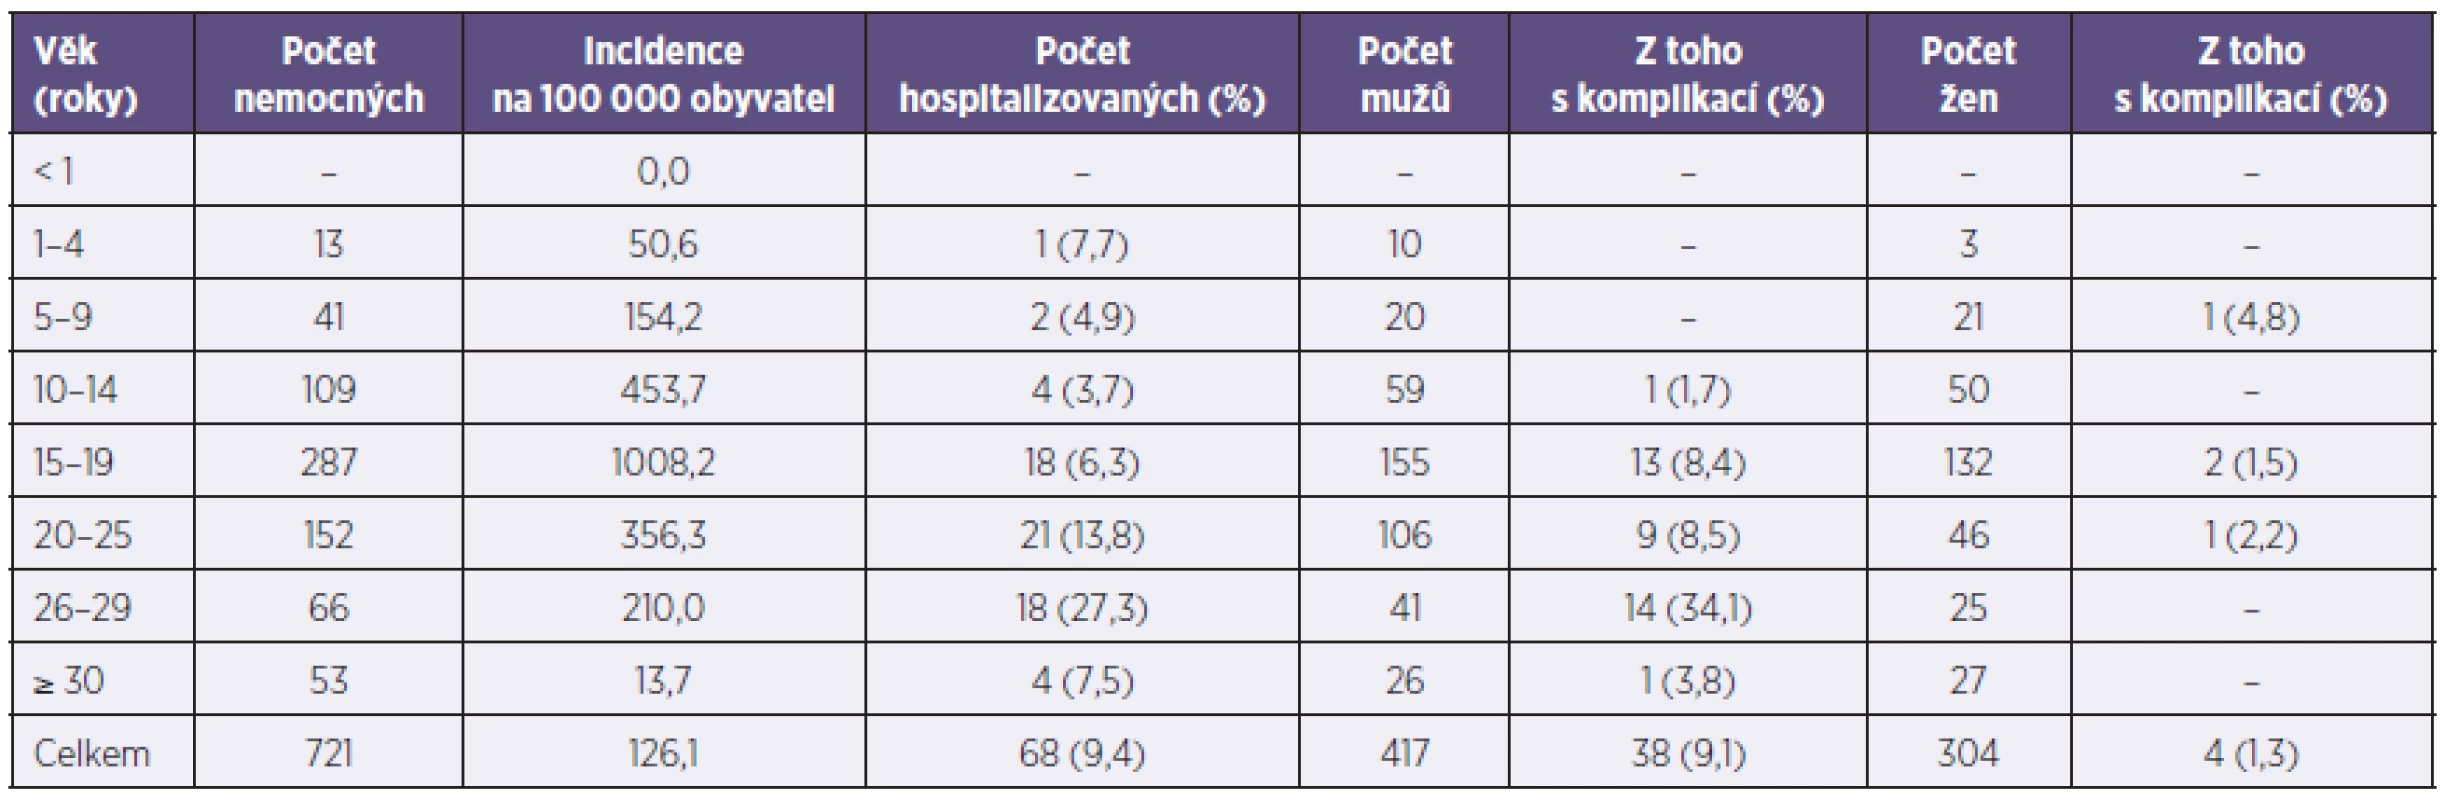 Hlášená onemocnění příušnicemi podle věku a pohlaví (Plzeňský kraj, 2011)
Table 1. Reported mumps cases by age and sex (Plzeň Region, 2011)